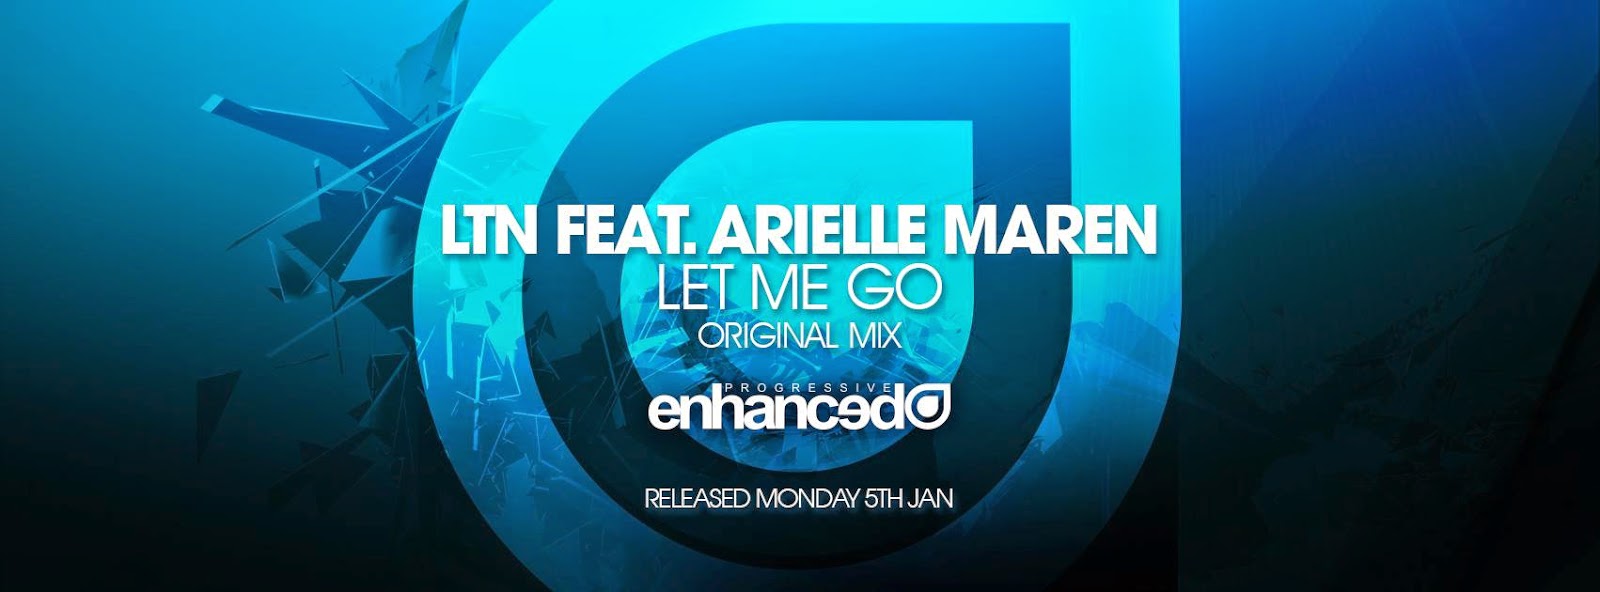 LTN Feat. Arielle Maren - Let Me Go